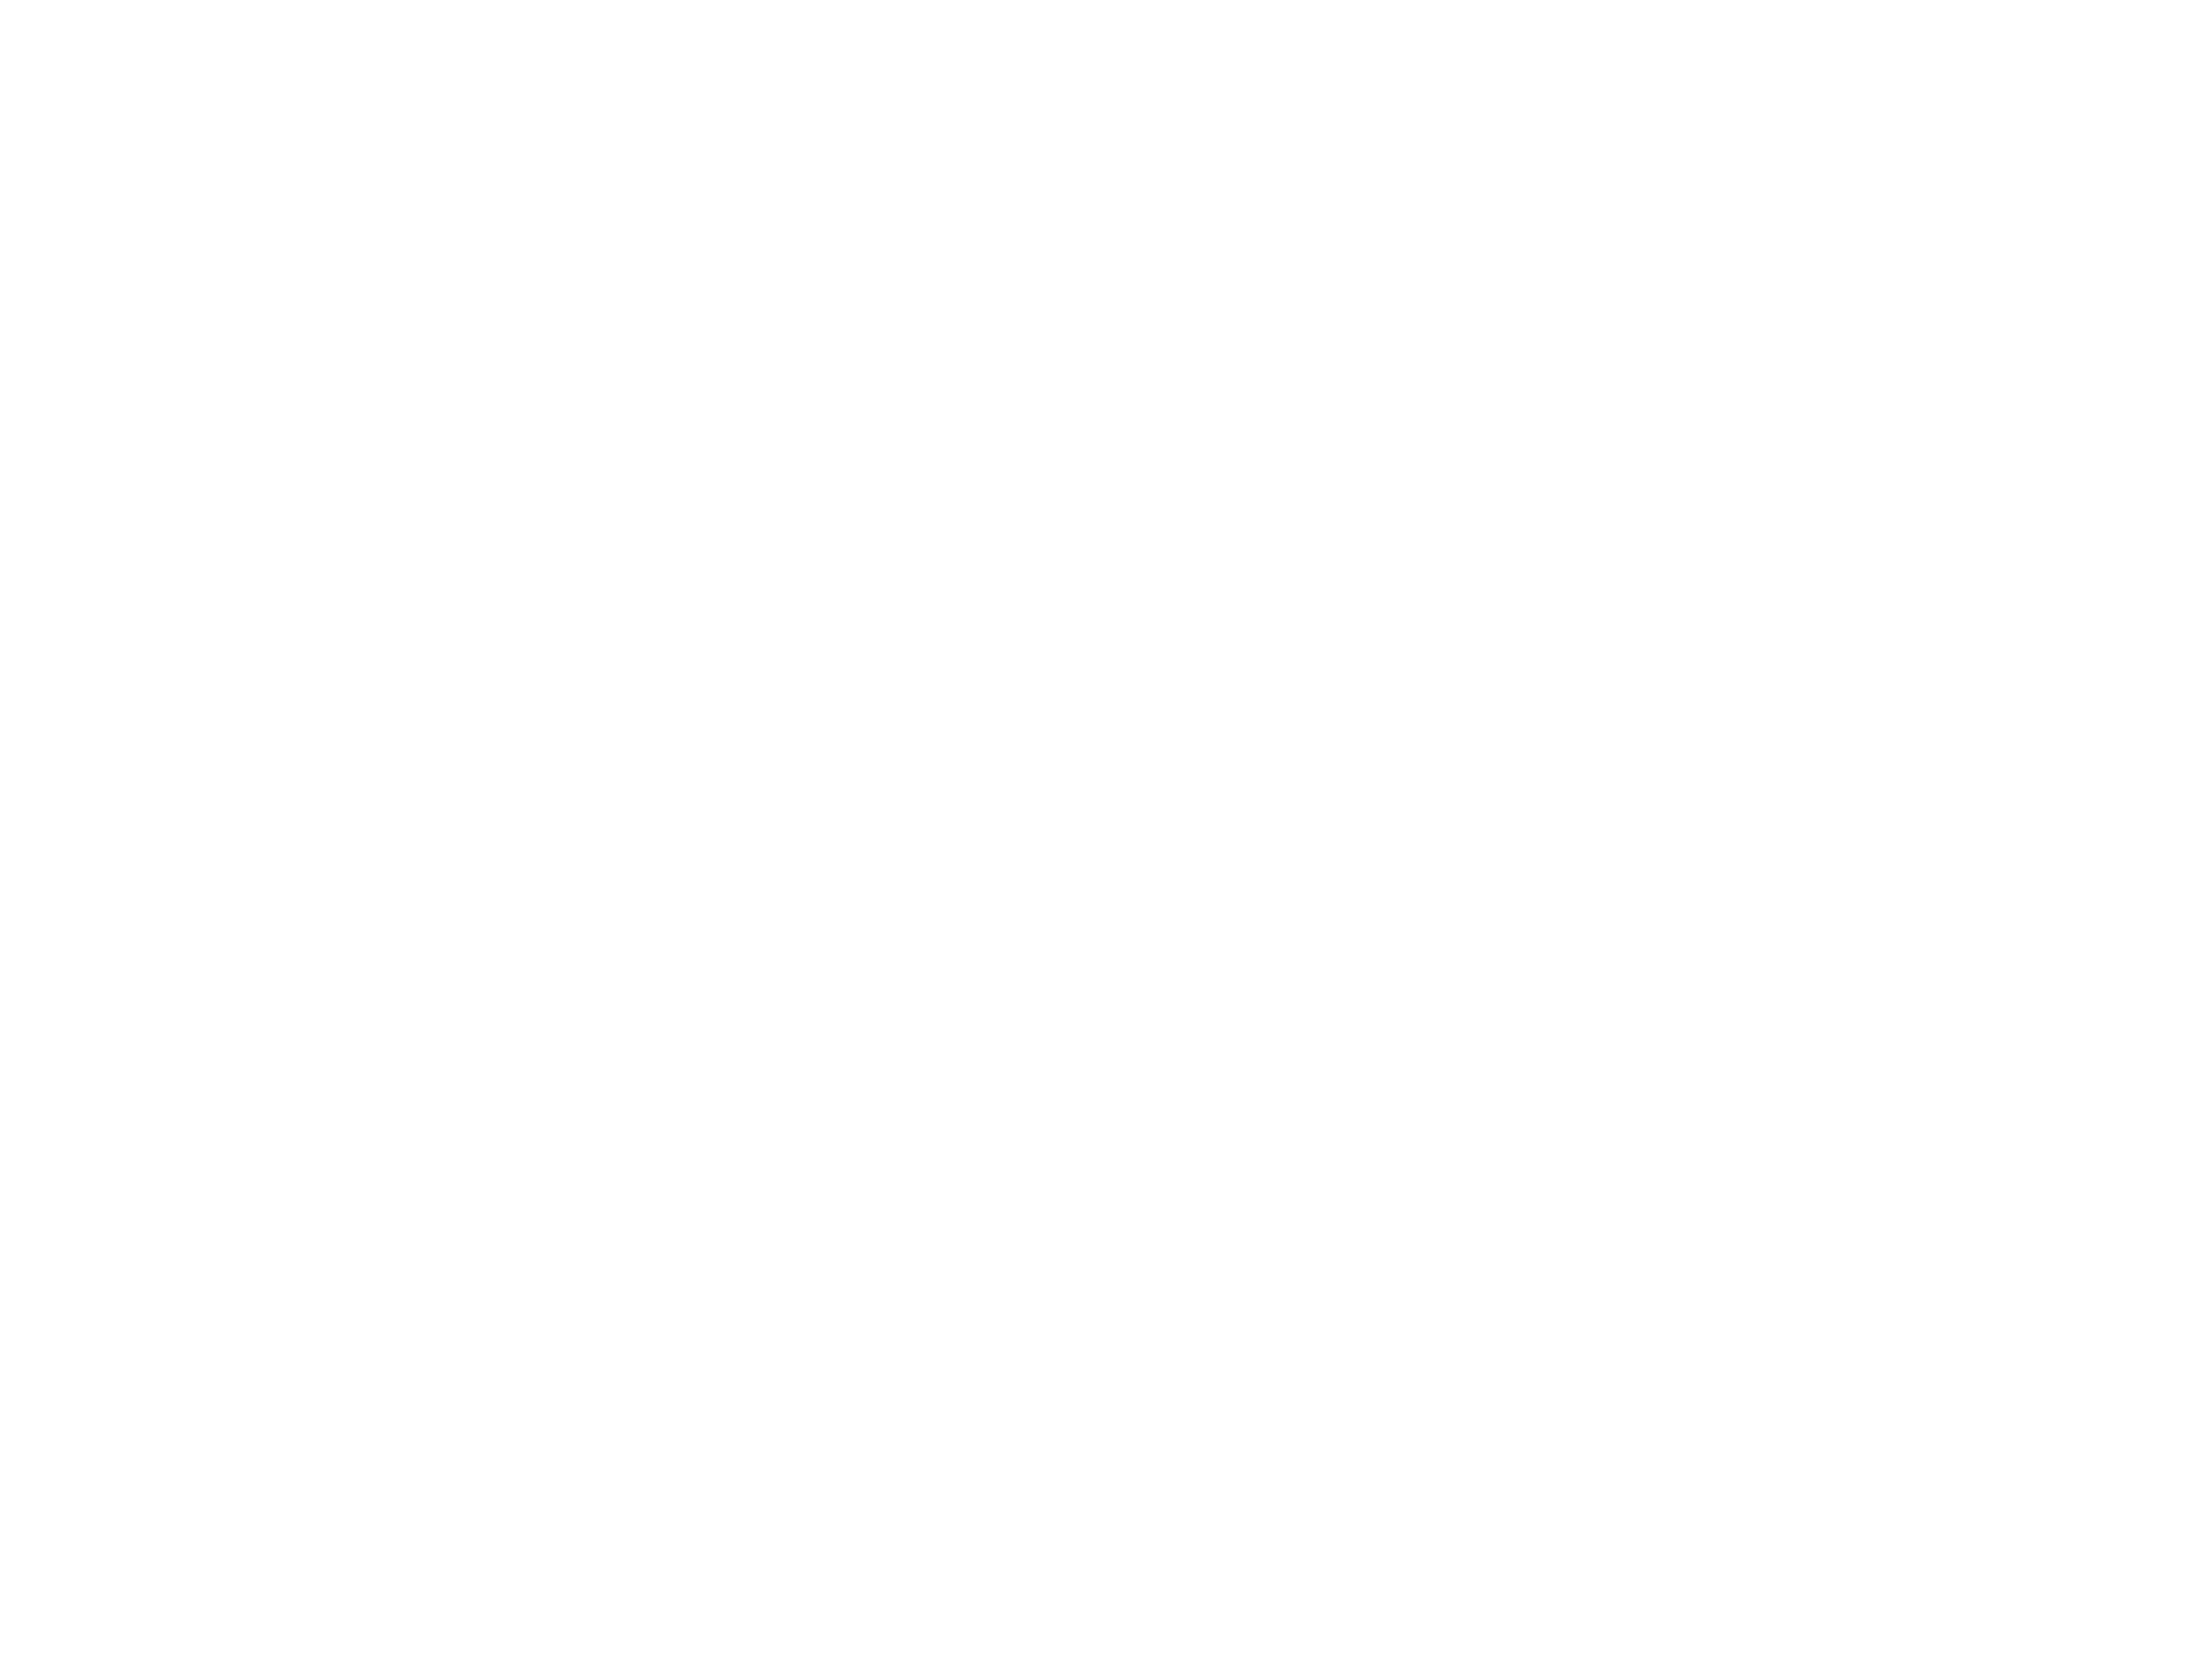 Effie Award logo „All-time winners’ list Germany“, white lettering on black background